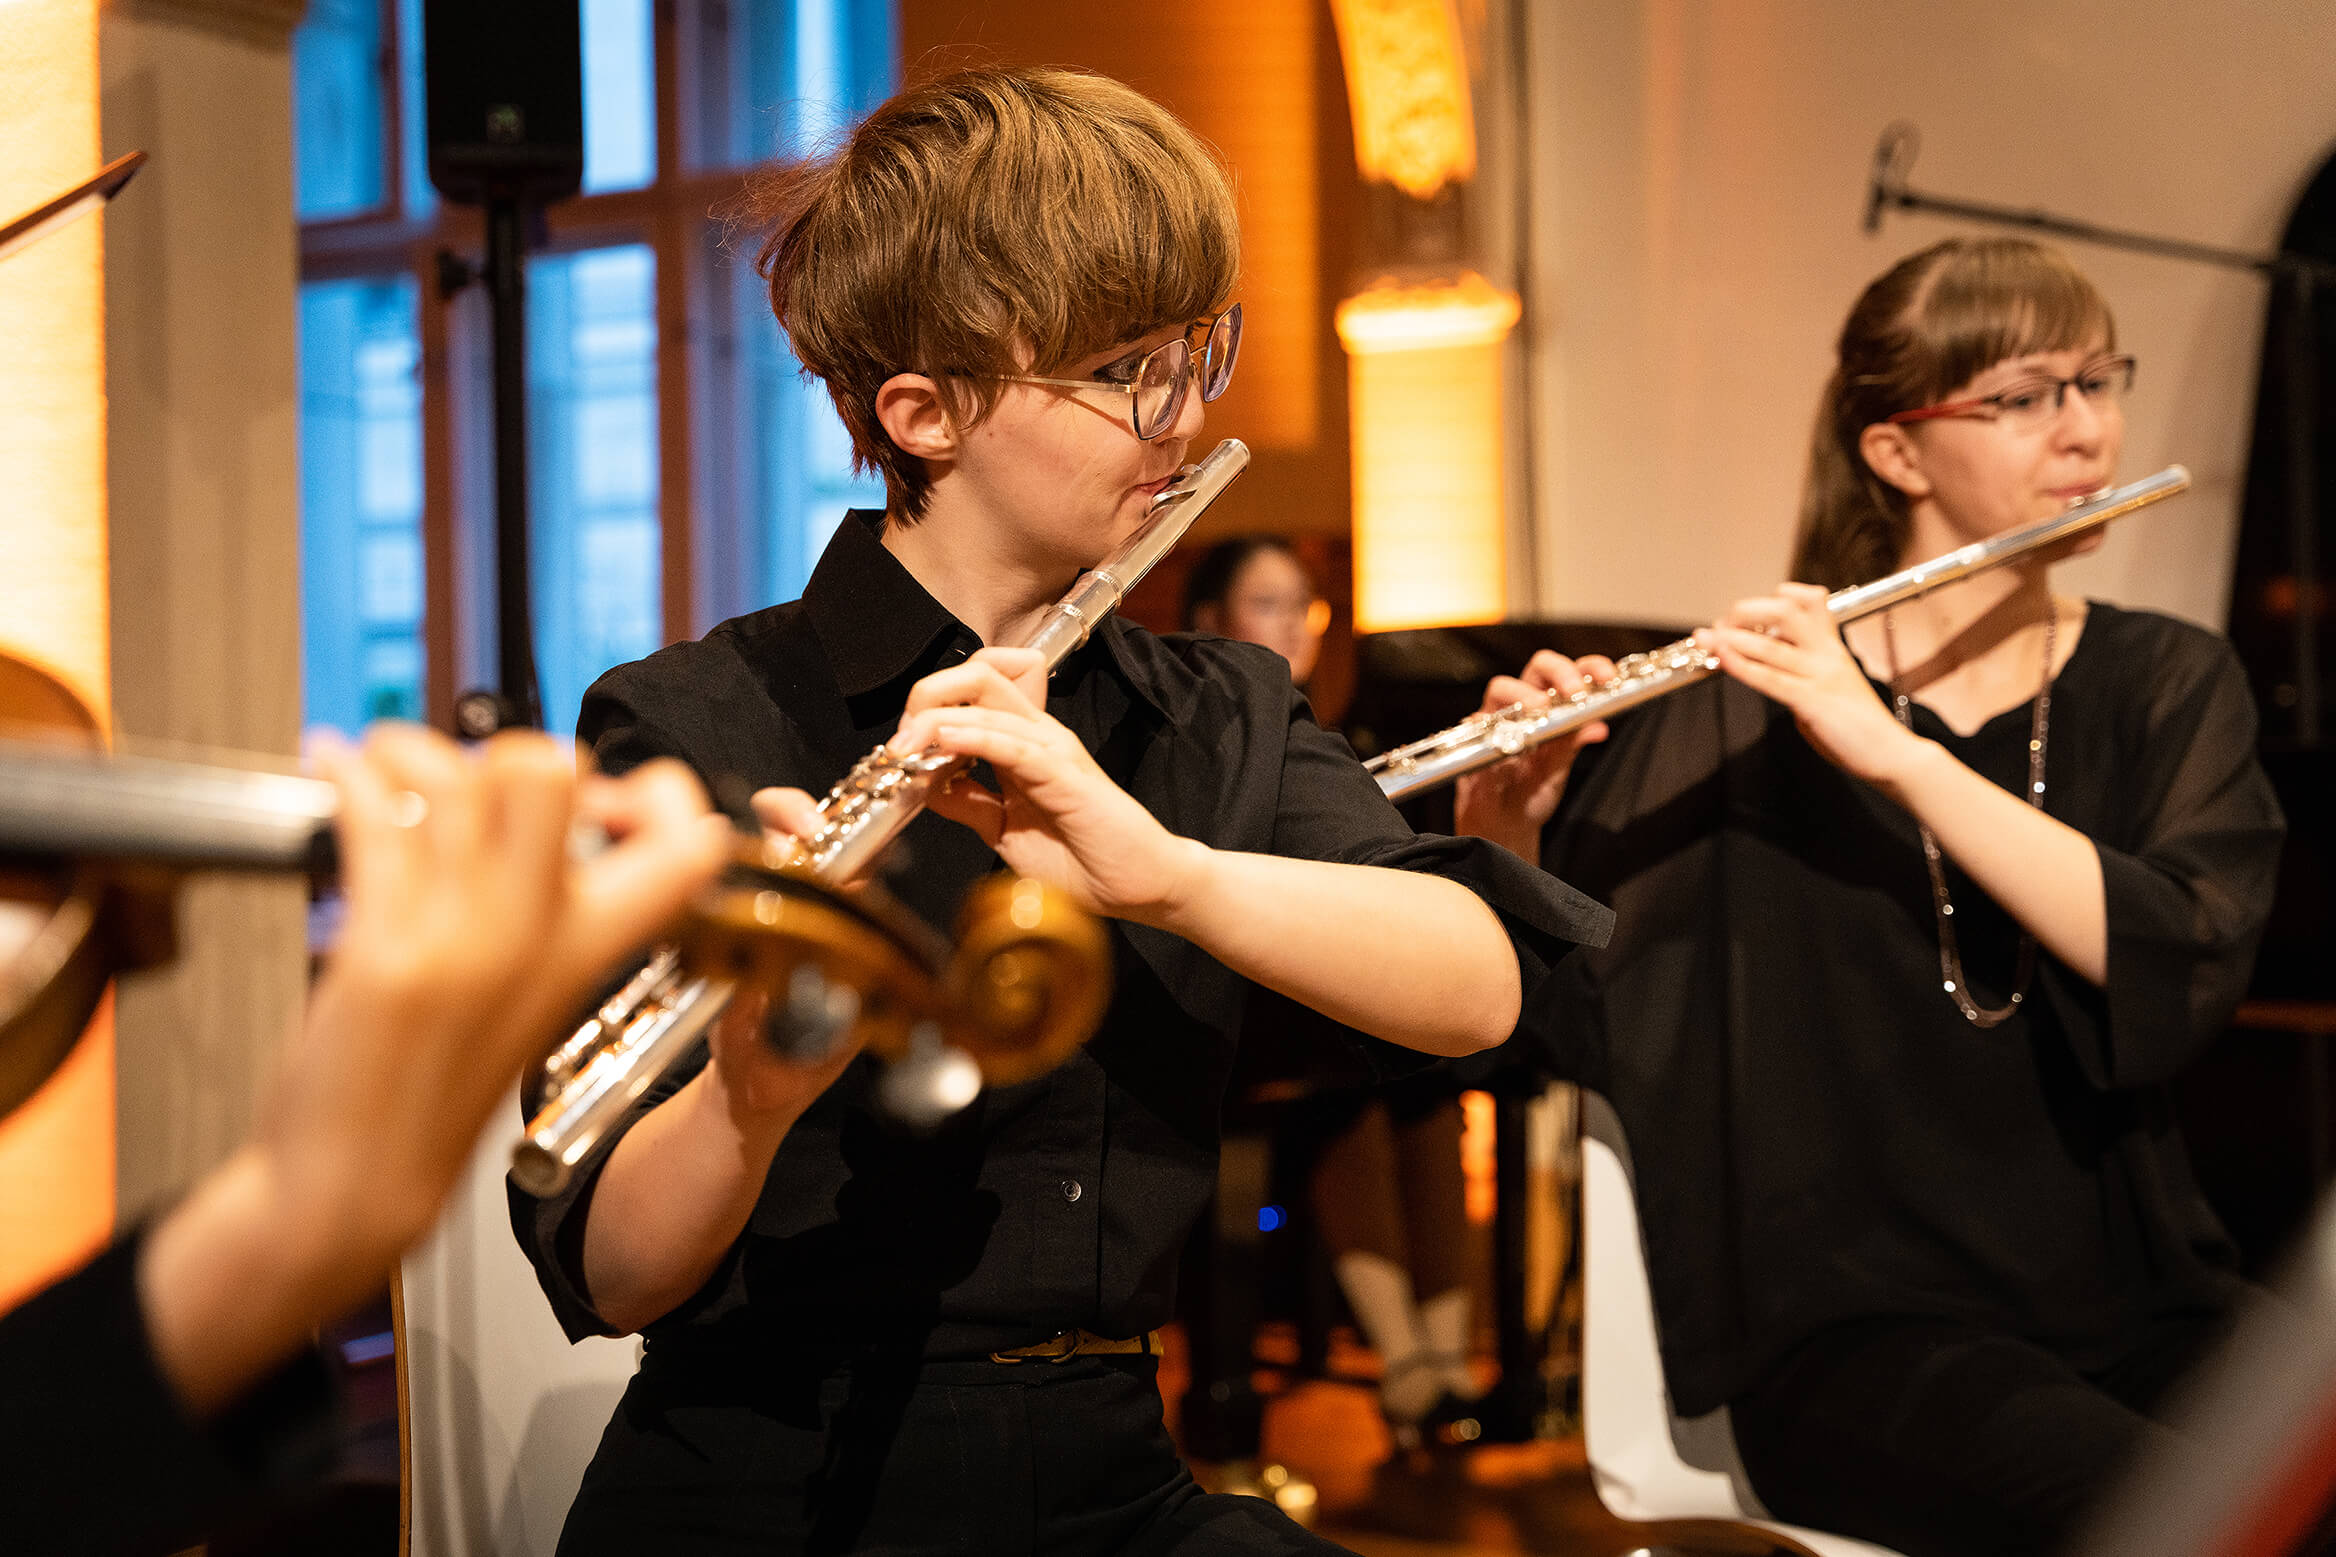 Das Bild zeigt zwei junge Musiker:innen während des Konzertes beim Querflöte spielen.